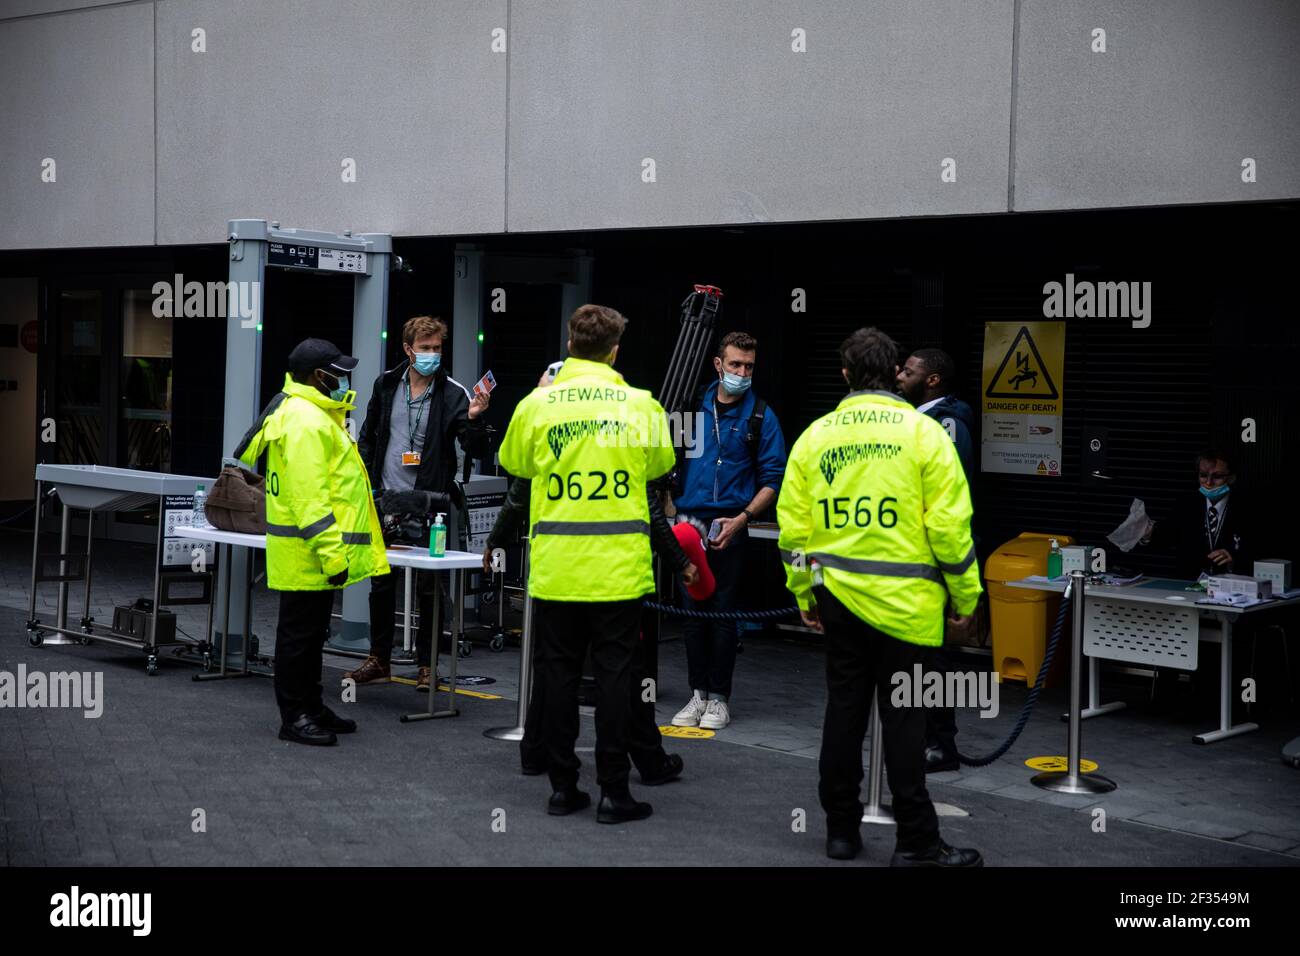 Vista general de medios de comunicación que están haciendo un check in antes de entrar en el suelo antes del partido de Premier League tras el brote de coronavirus